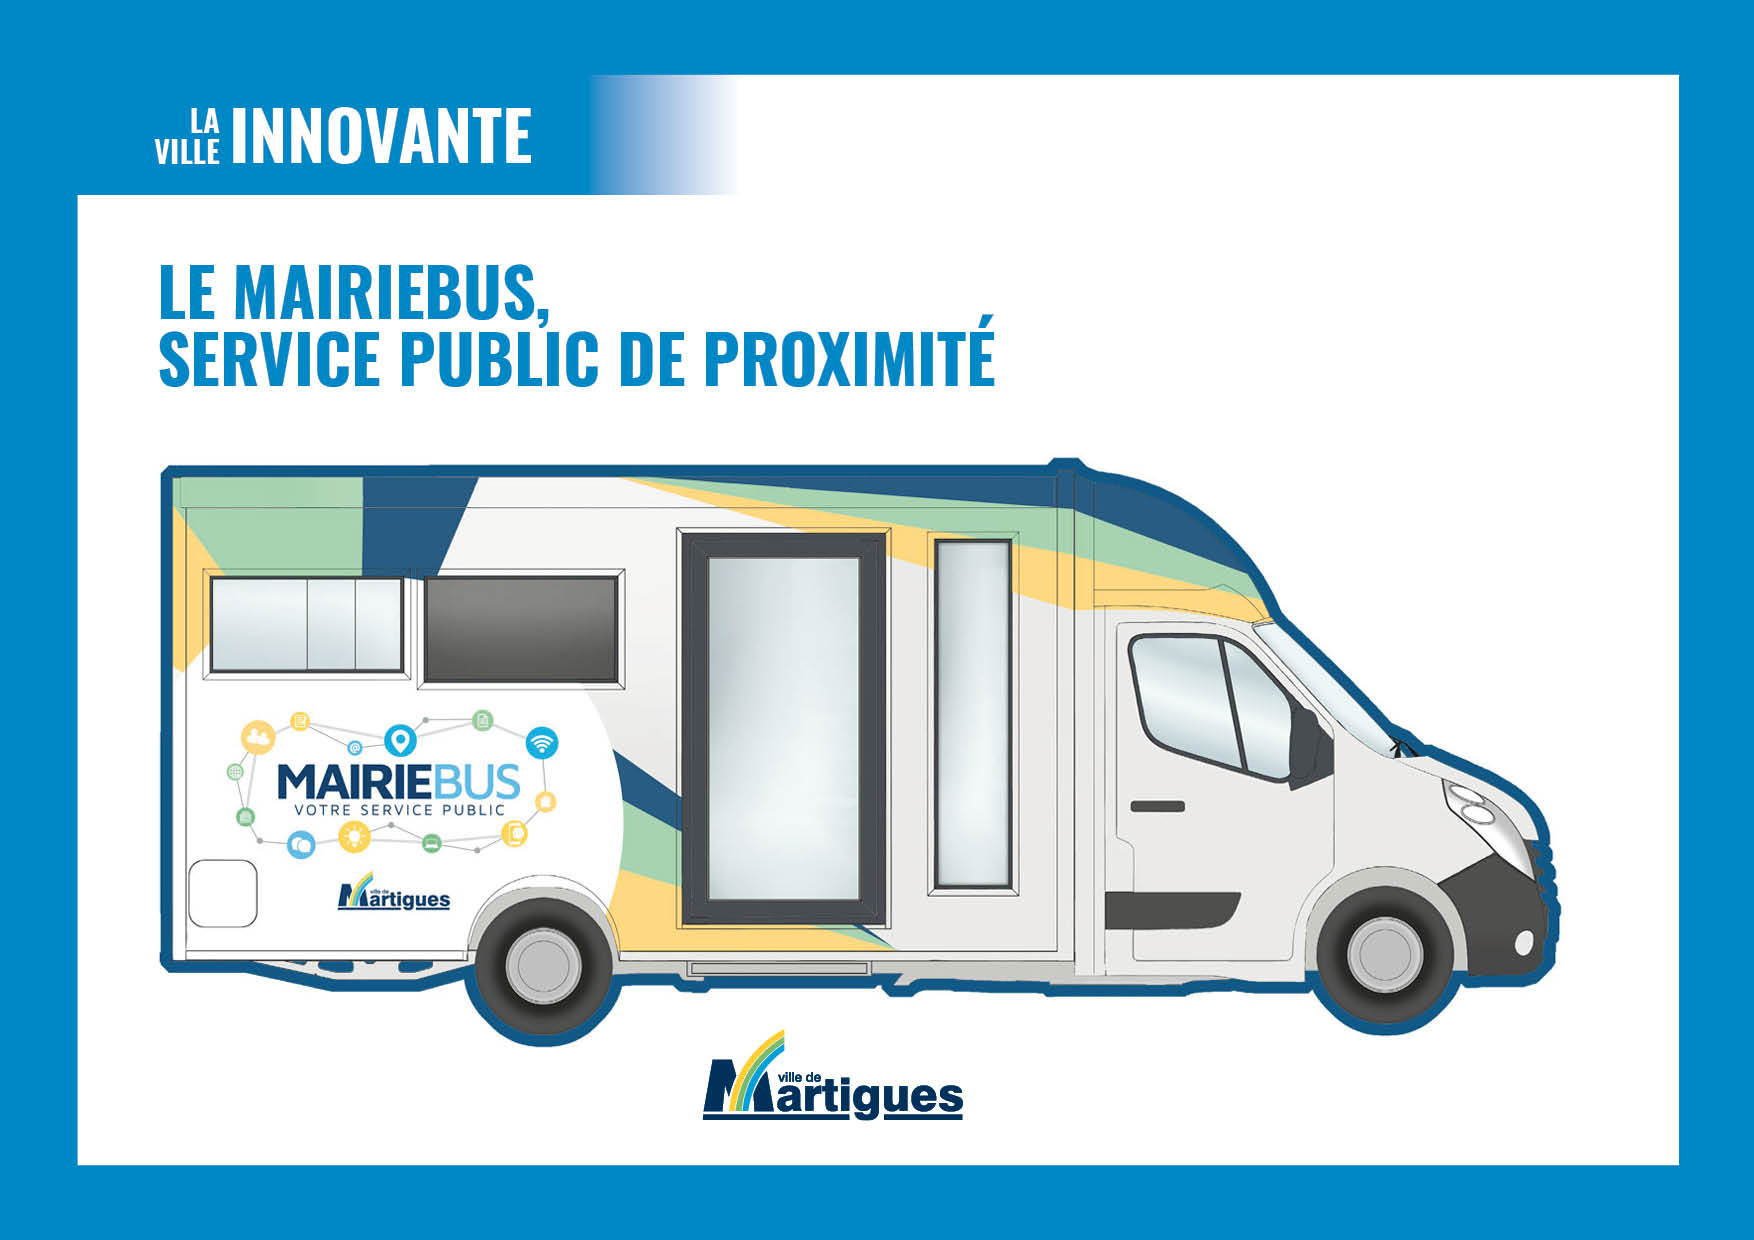 VILLE INNOVANTE. Le Mairiebus, service public de proximité entre en service  à partir du 5 octobre - Ville de Martigues